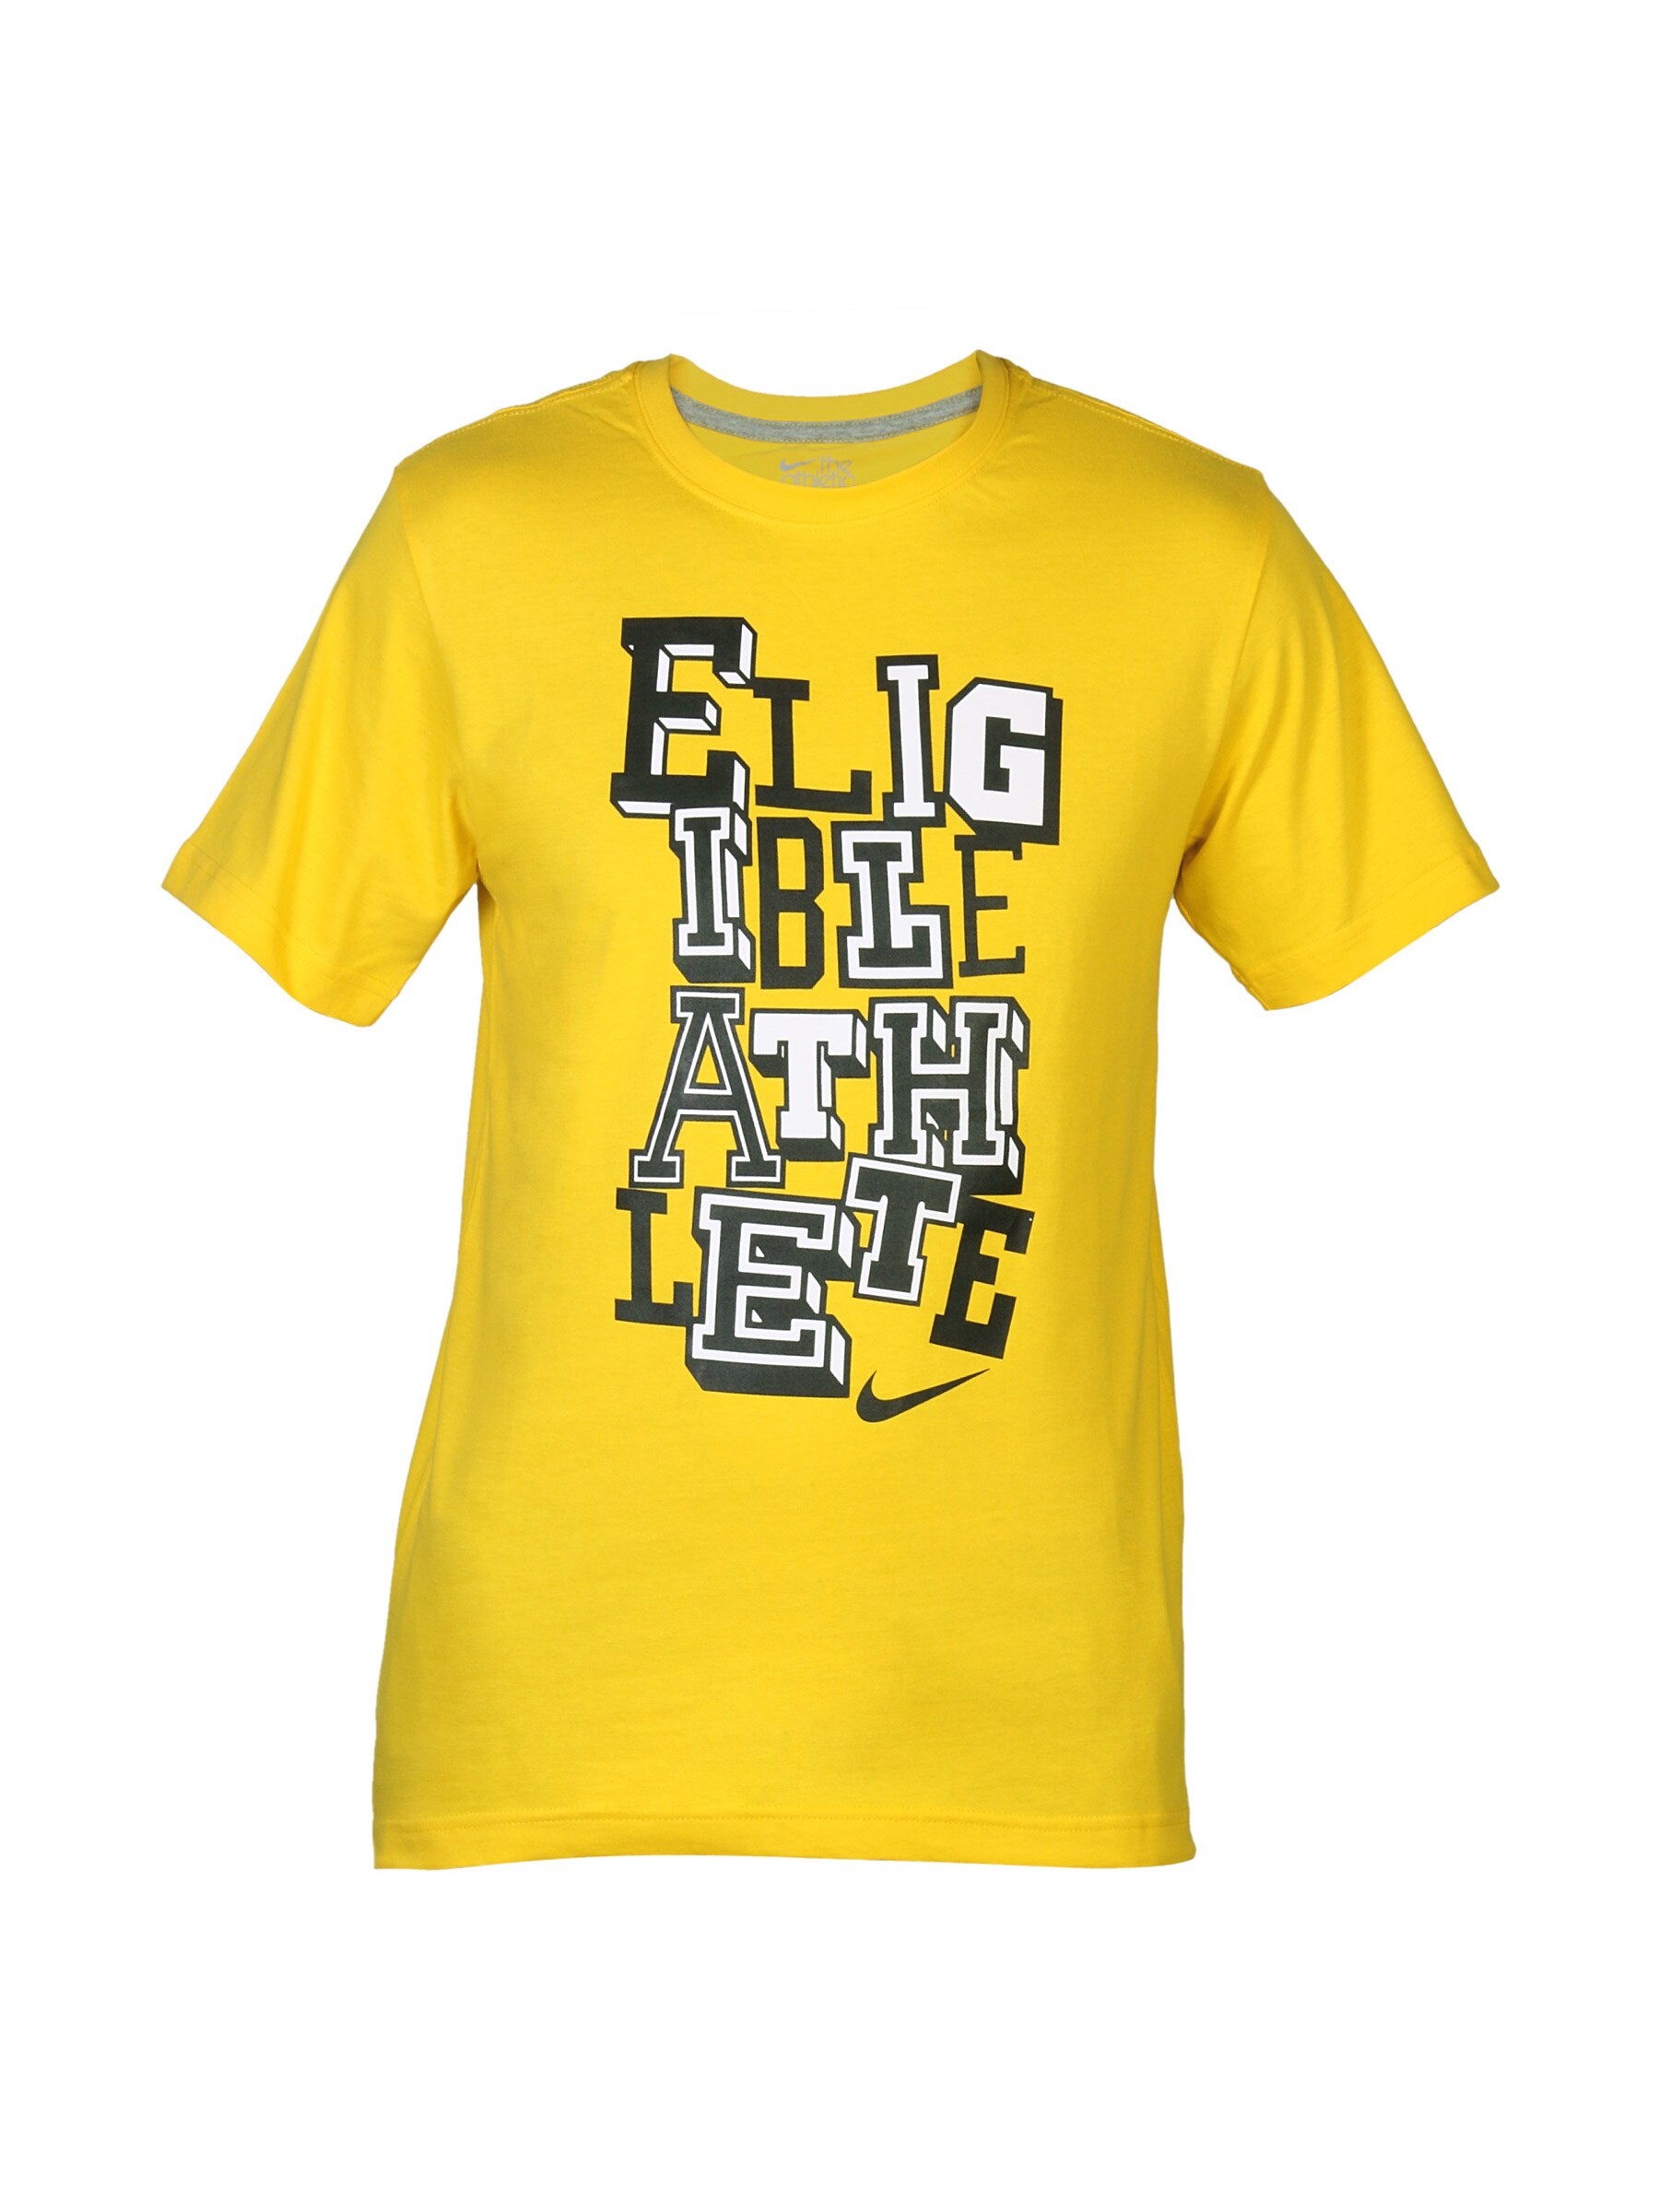 Nike Men Yellow Eligible Athlete T-shirt